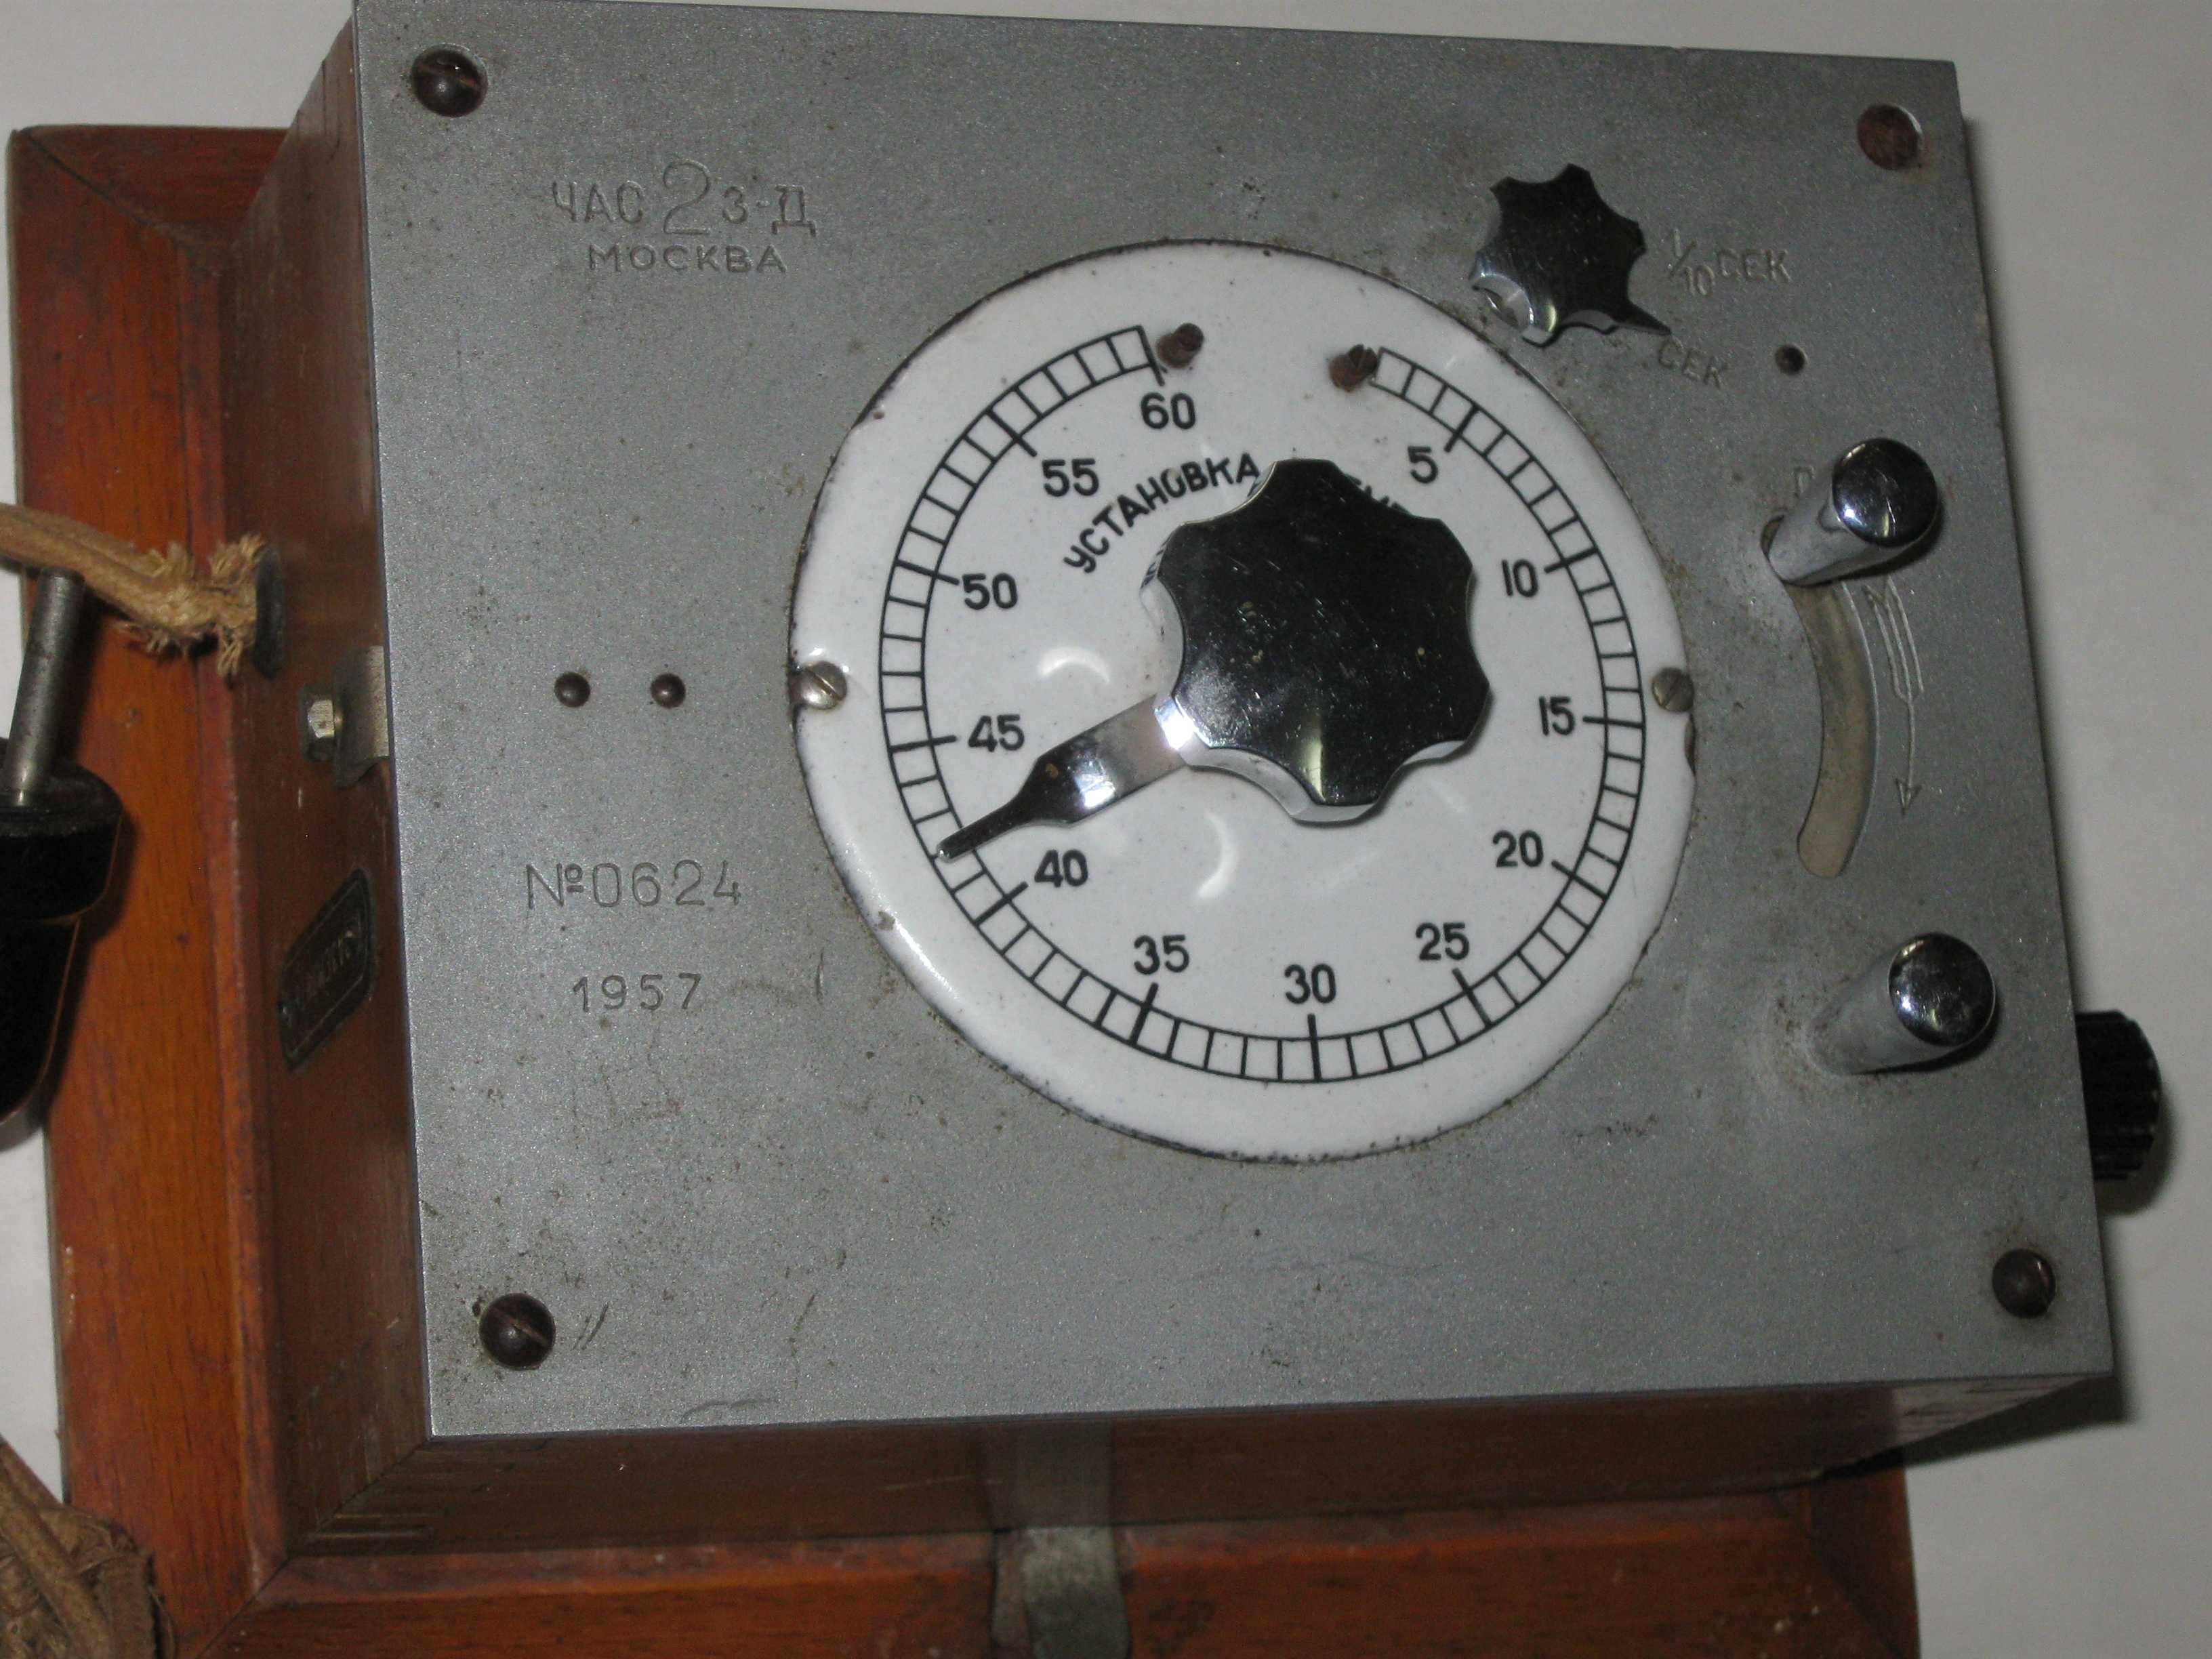 Настенный прибор реле времени МОСКВА 2-й часовой завод № 0624 (1957)